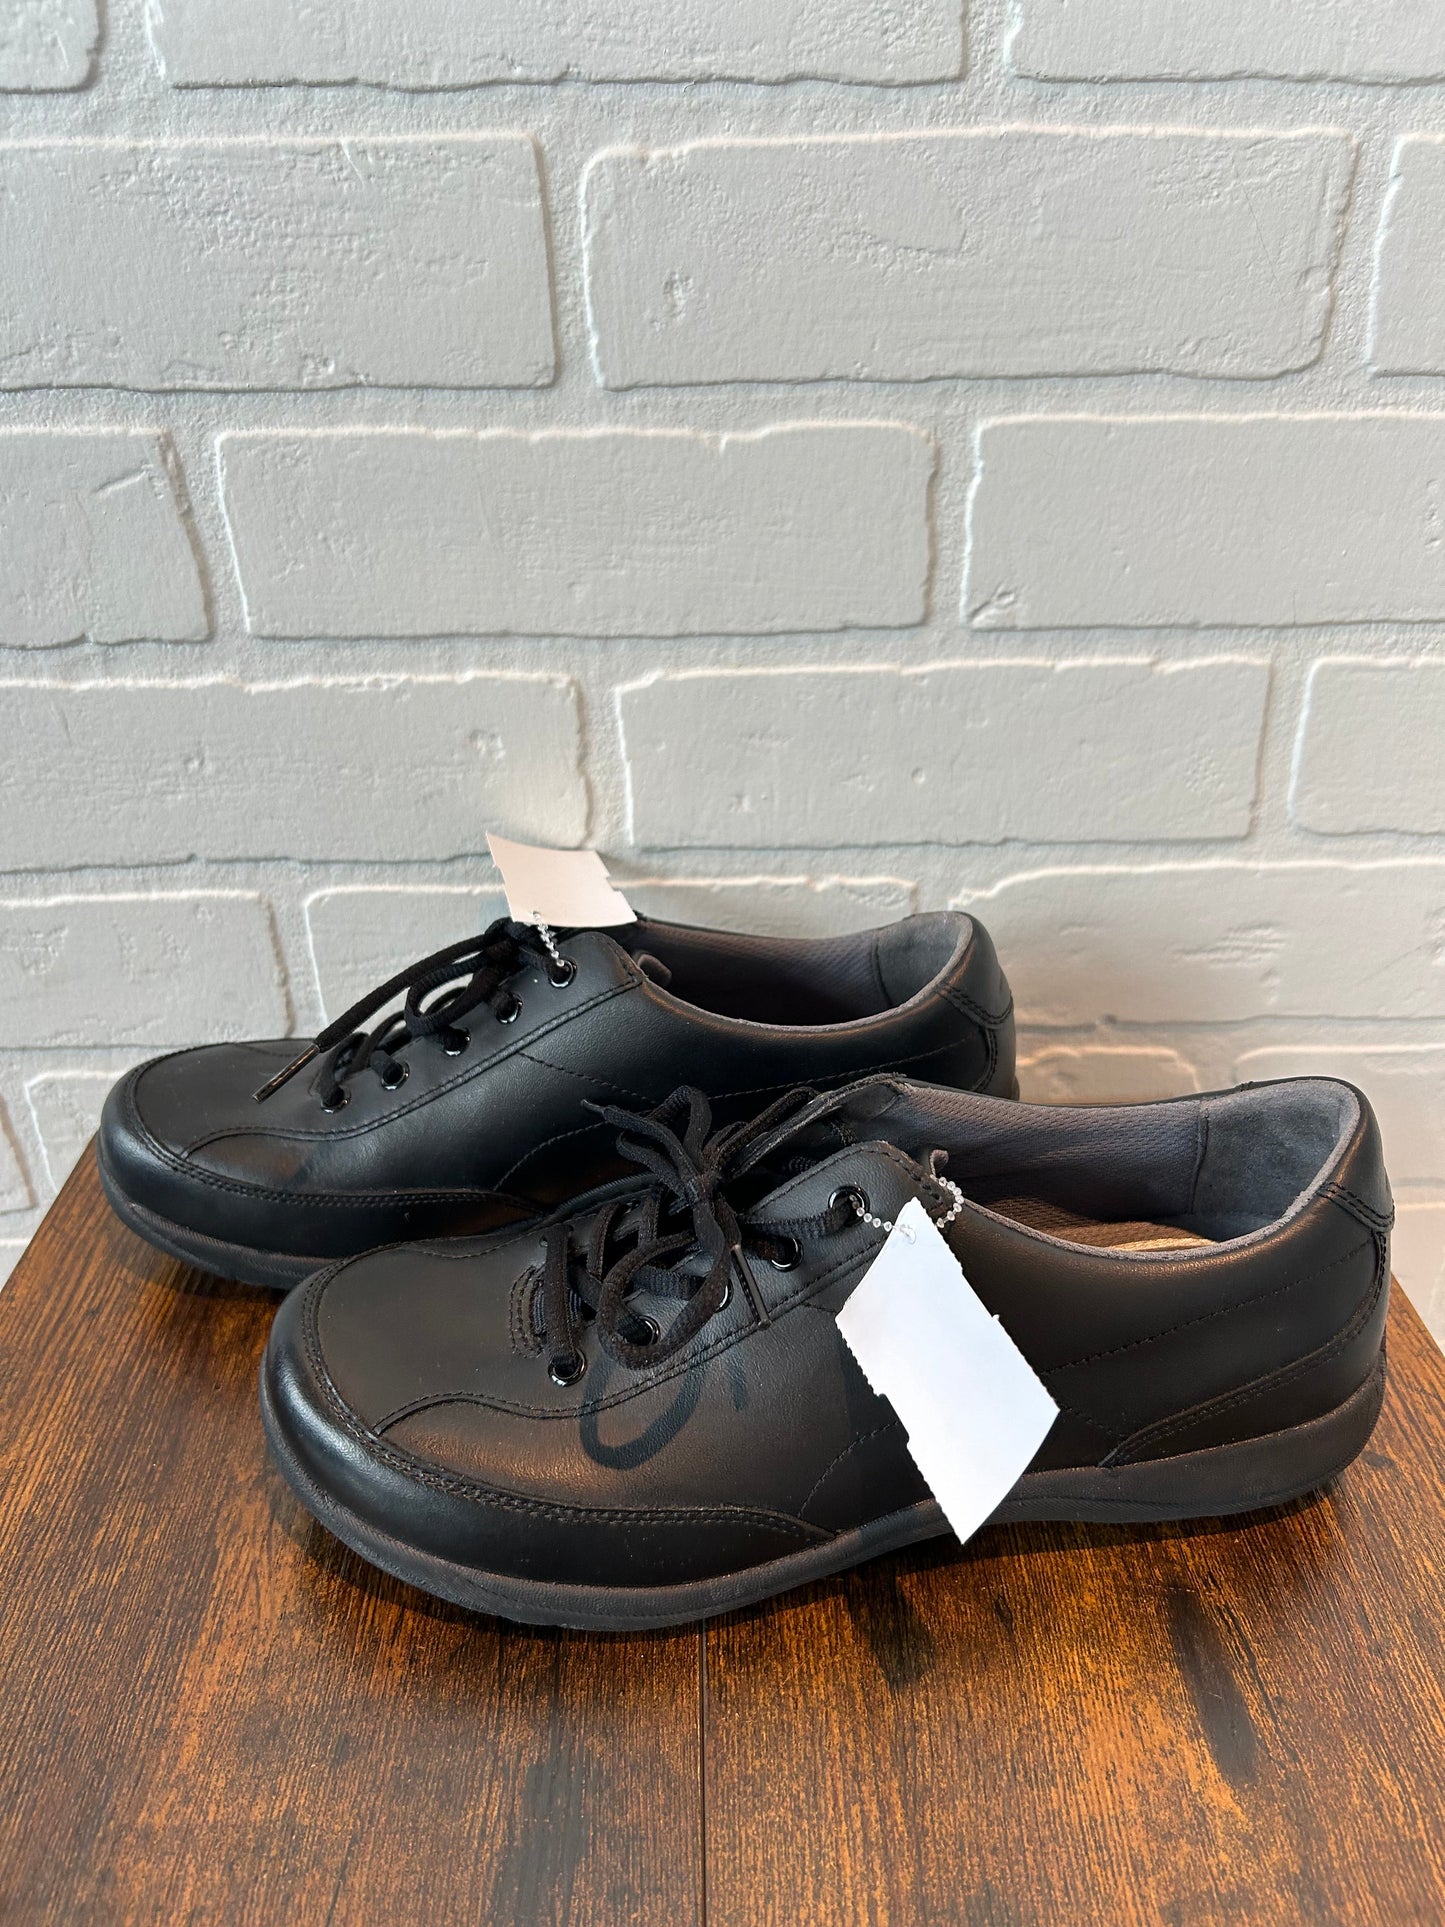 Shoes Flats By Dansko  Size: 8